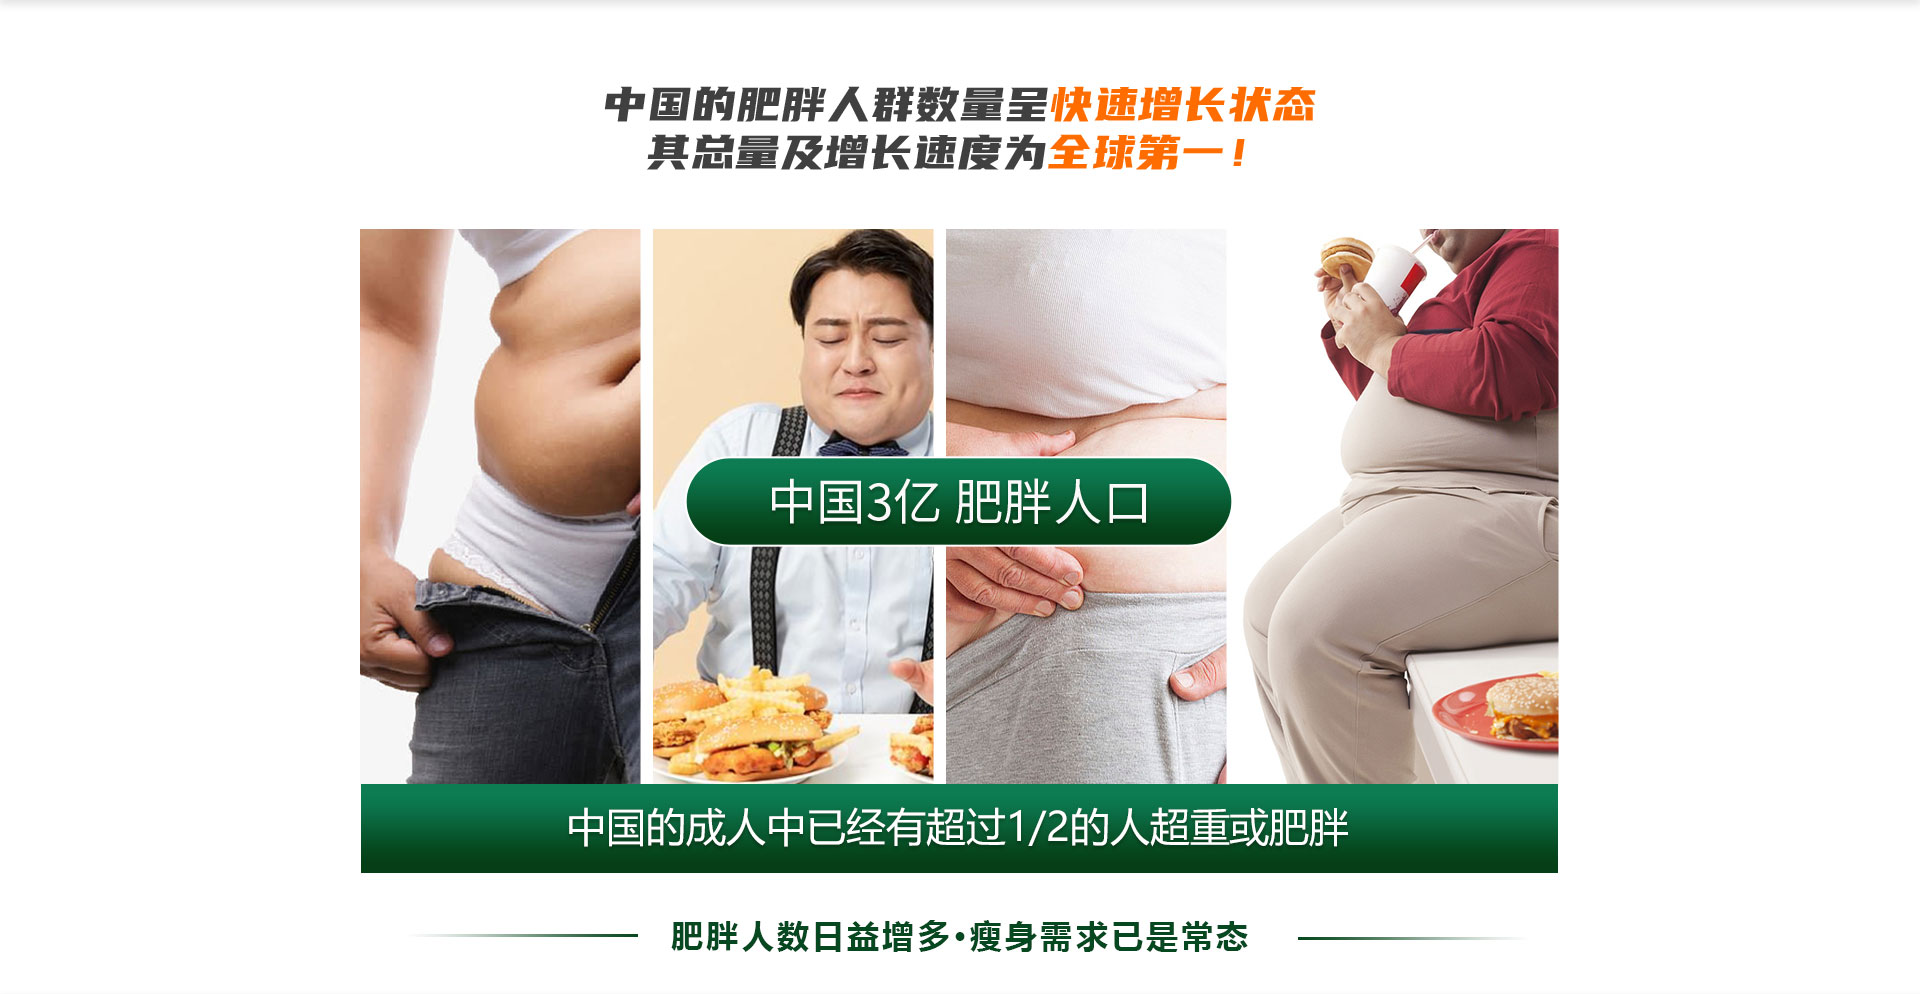 中国三亿肥胖人口